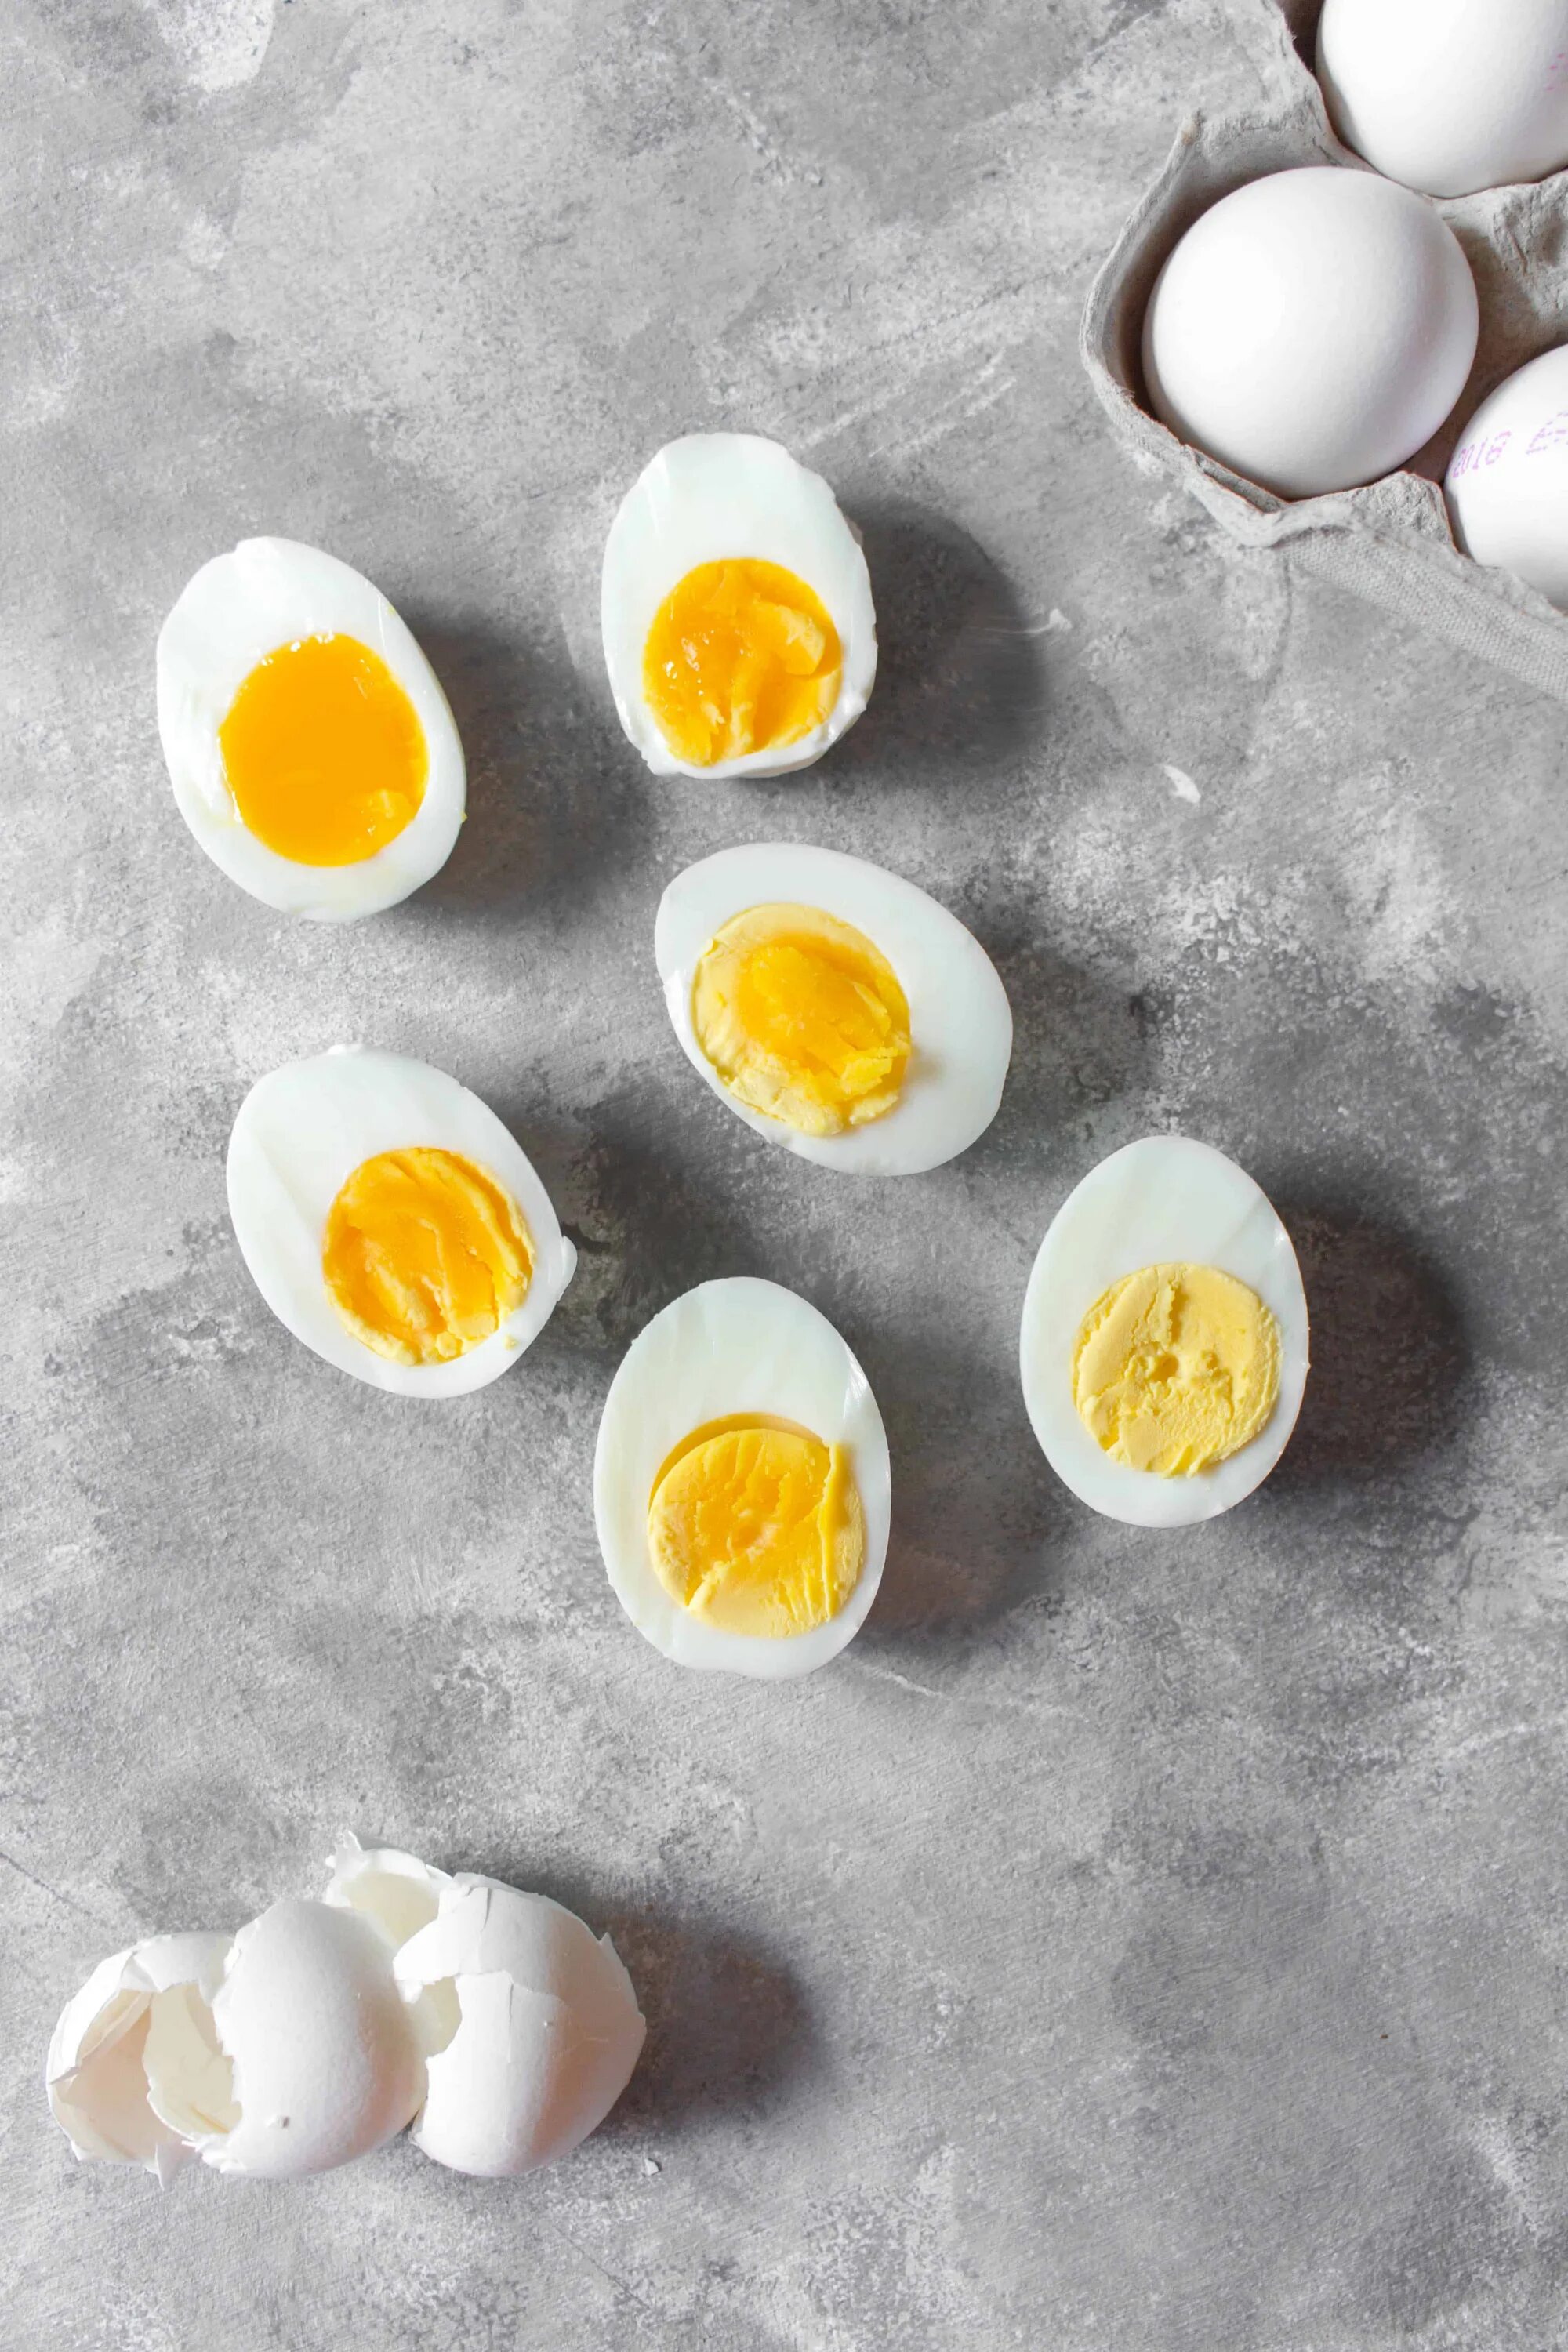 Soft boiled Egg группа. Яйца вкрутую. Яйца сваренные вкрутую. Яичница вкрутую.